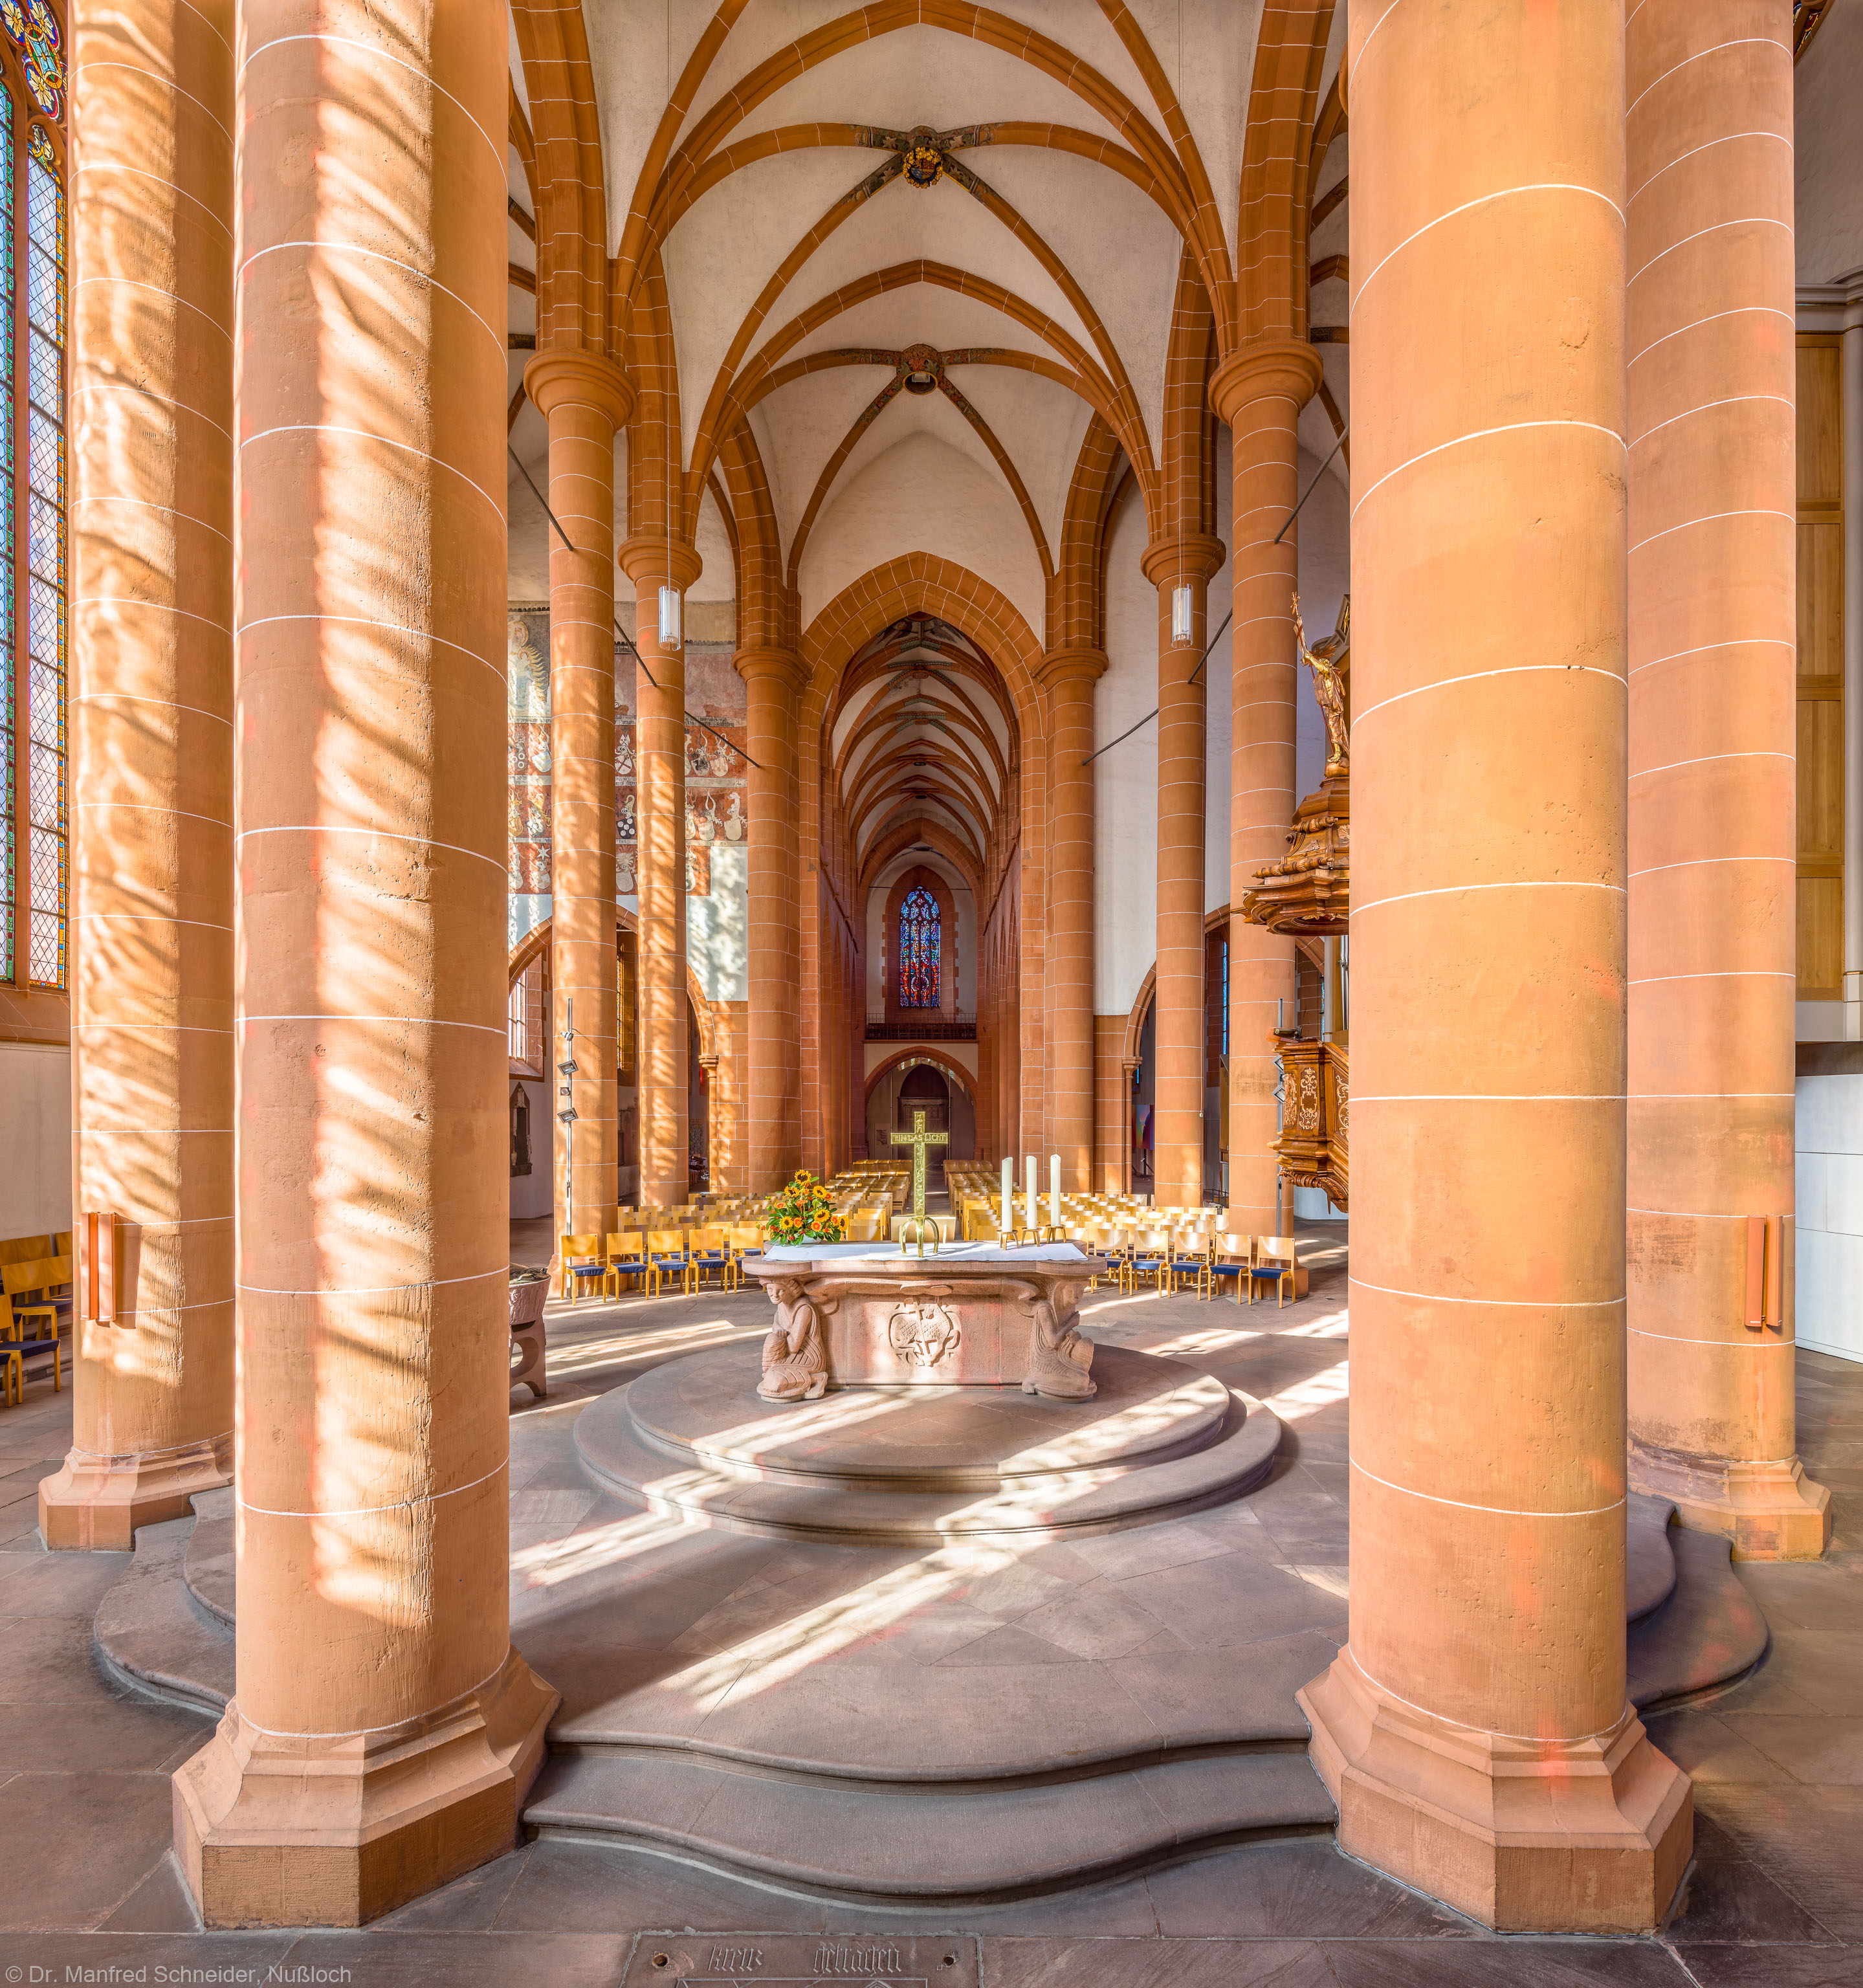 Heidelberg - Heiliggeistkirche - Chor - Blick vom Chorhaupt in den Chor nach Westen mit Säulen, Gewölbe und Altar (aufgenommen im September 2015, am späten Vormittag)